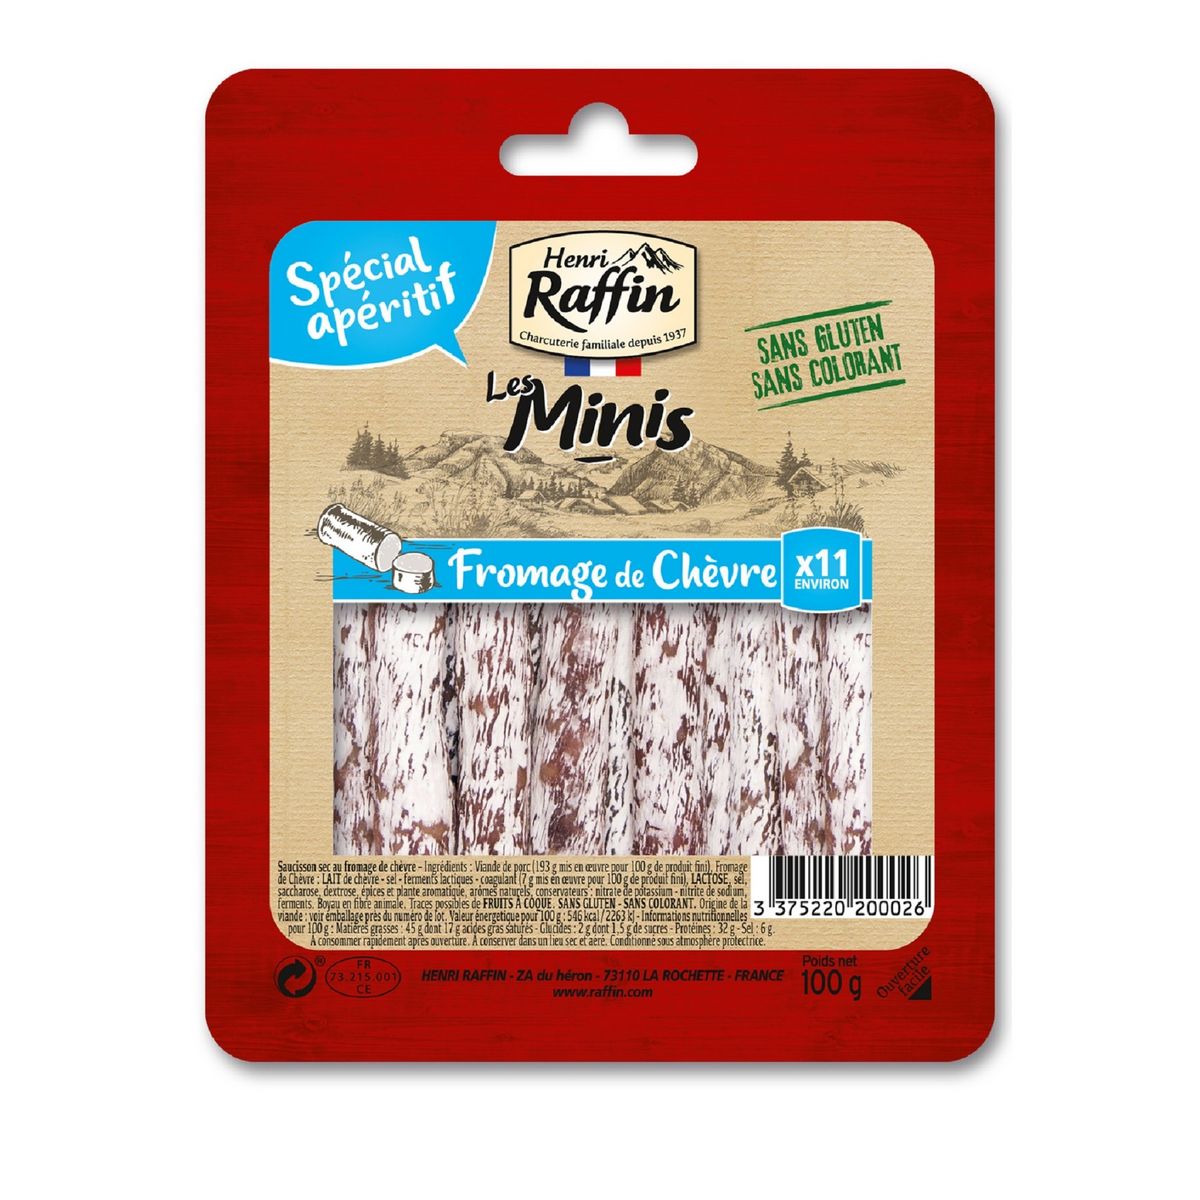 HENRI RAFFIN Mini saucisson au fromage de chèvre 11 pièces 100g